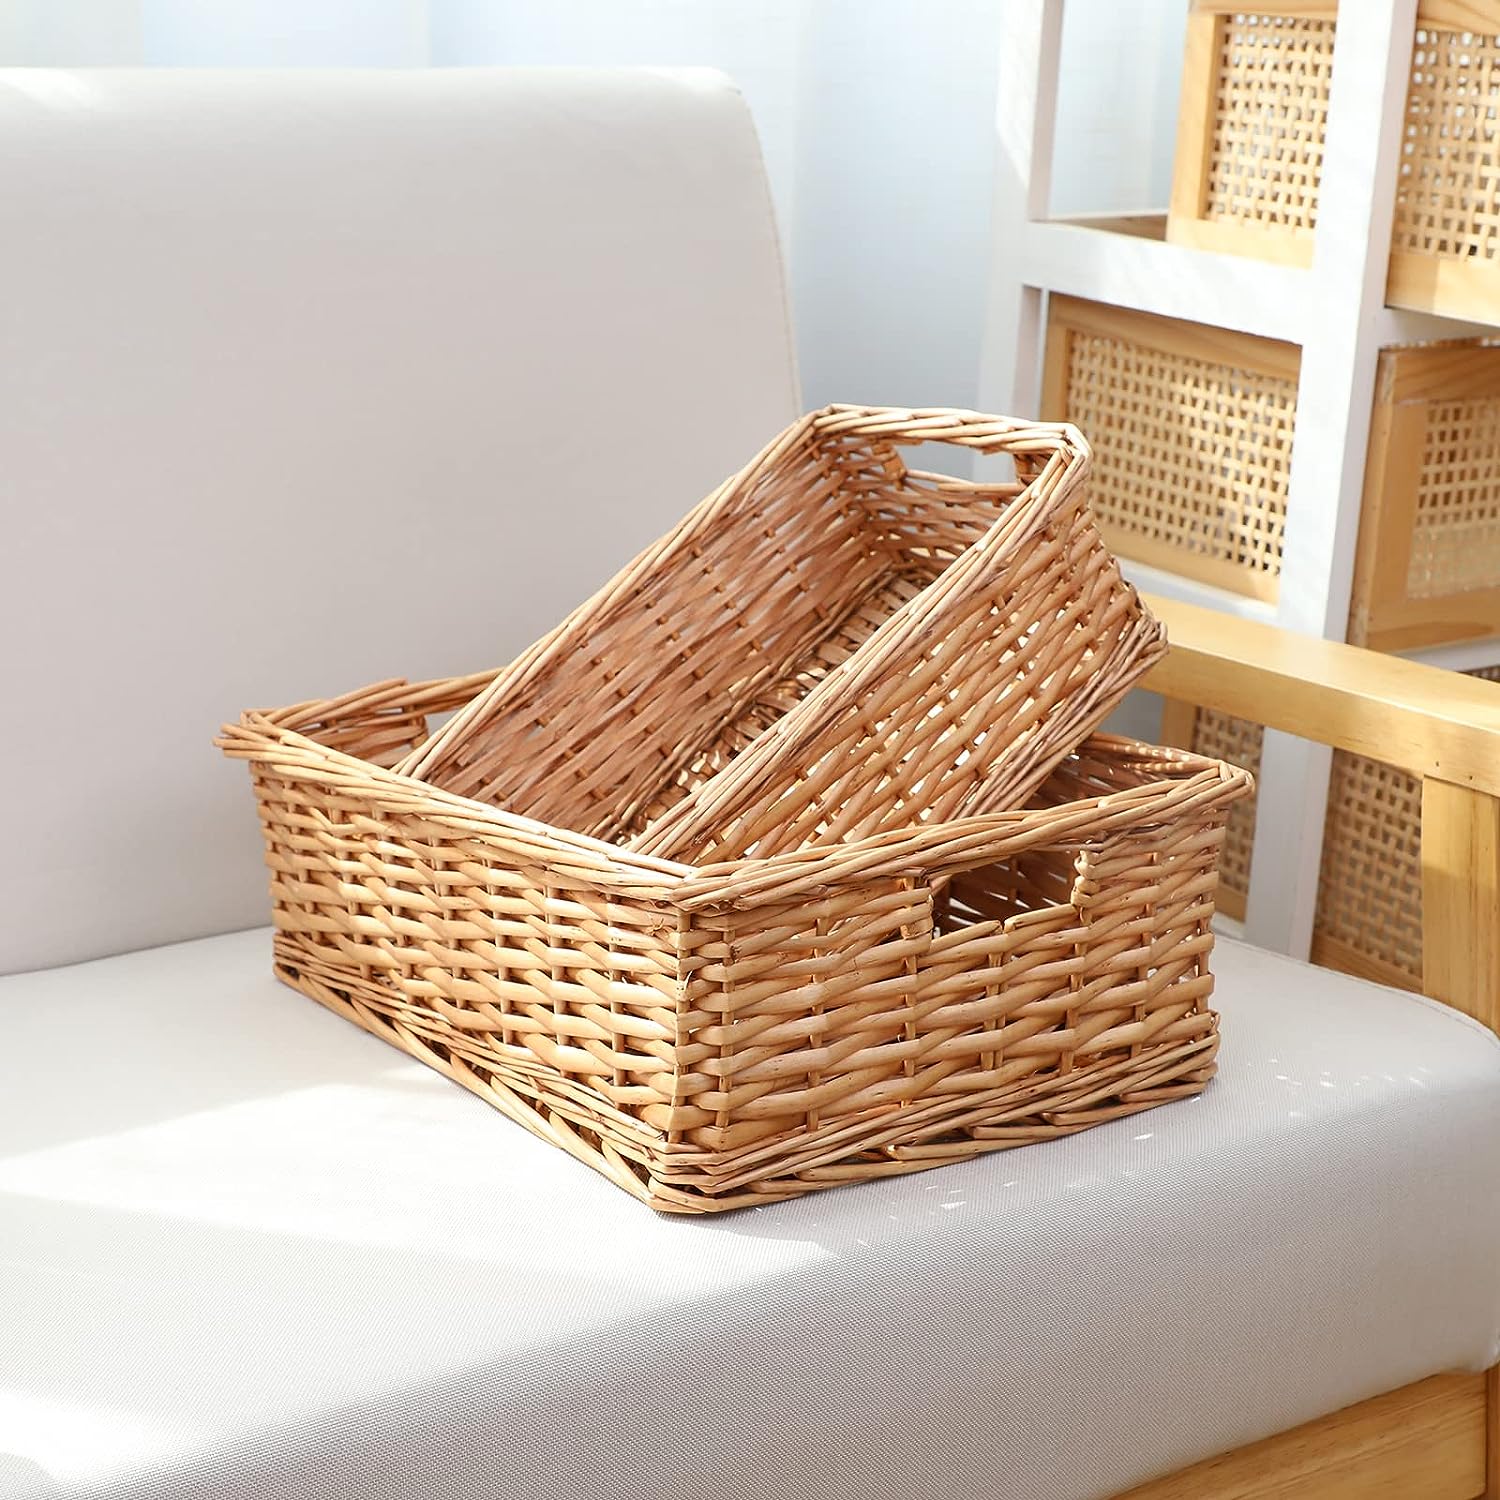 Wicker Storage Baskets for Bathroom, Rattan Rectangular Storage